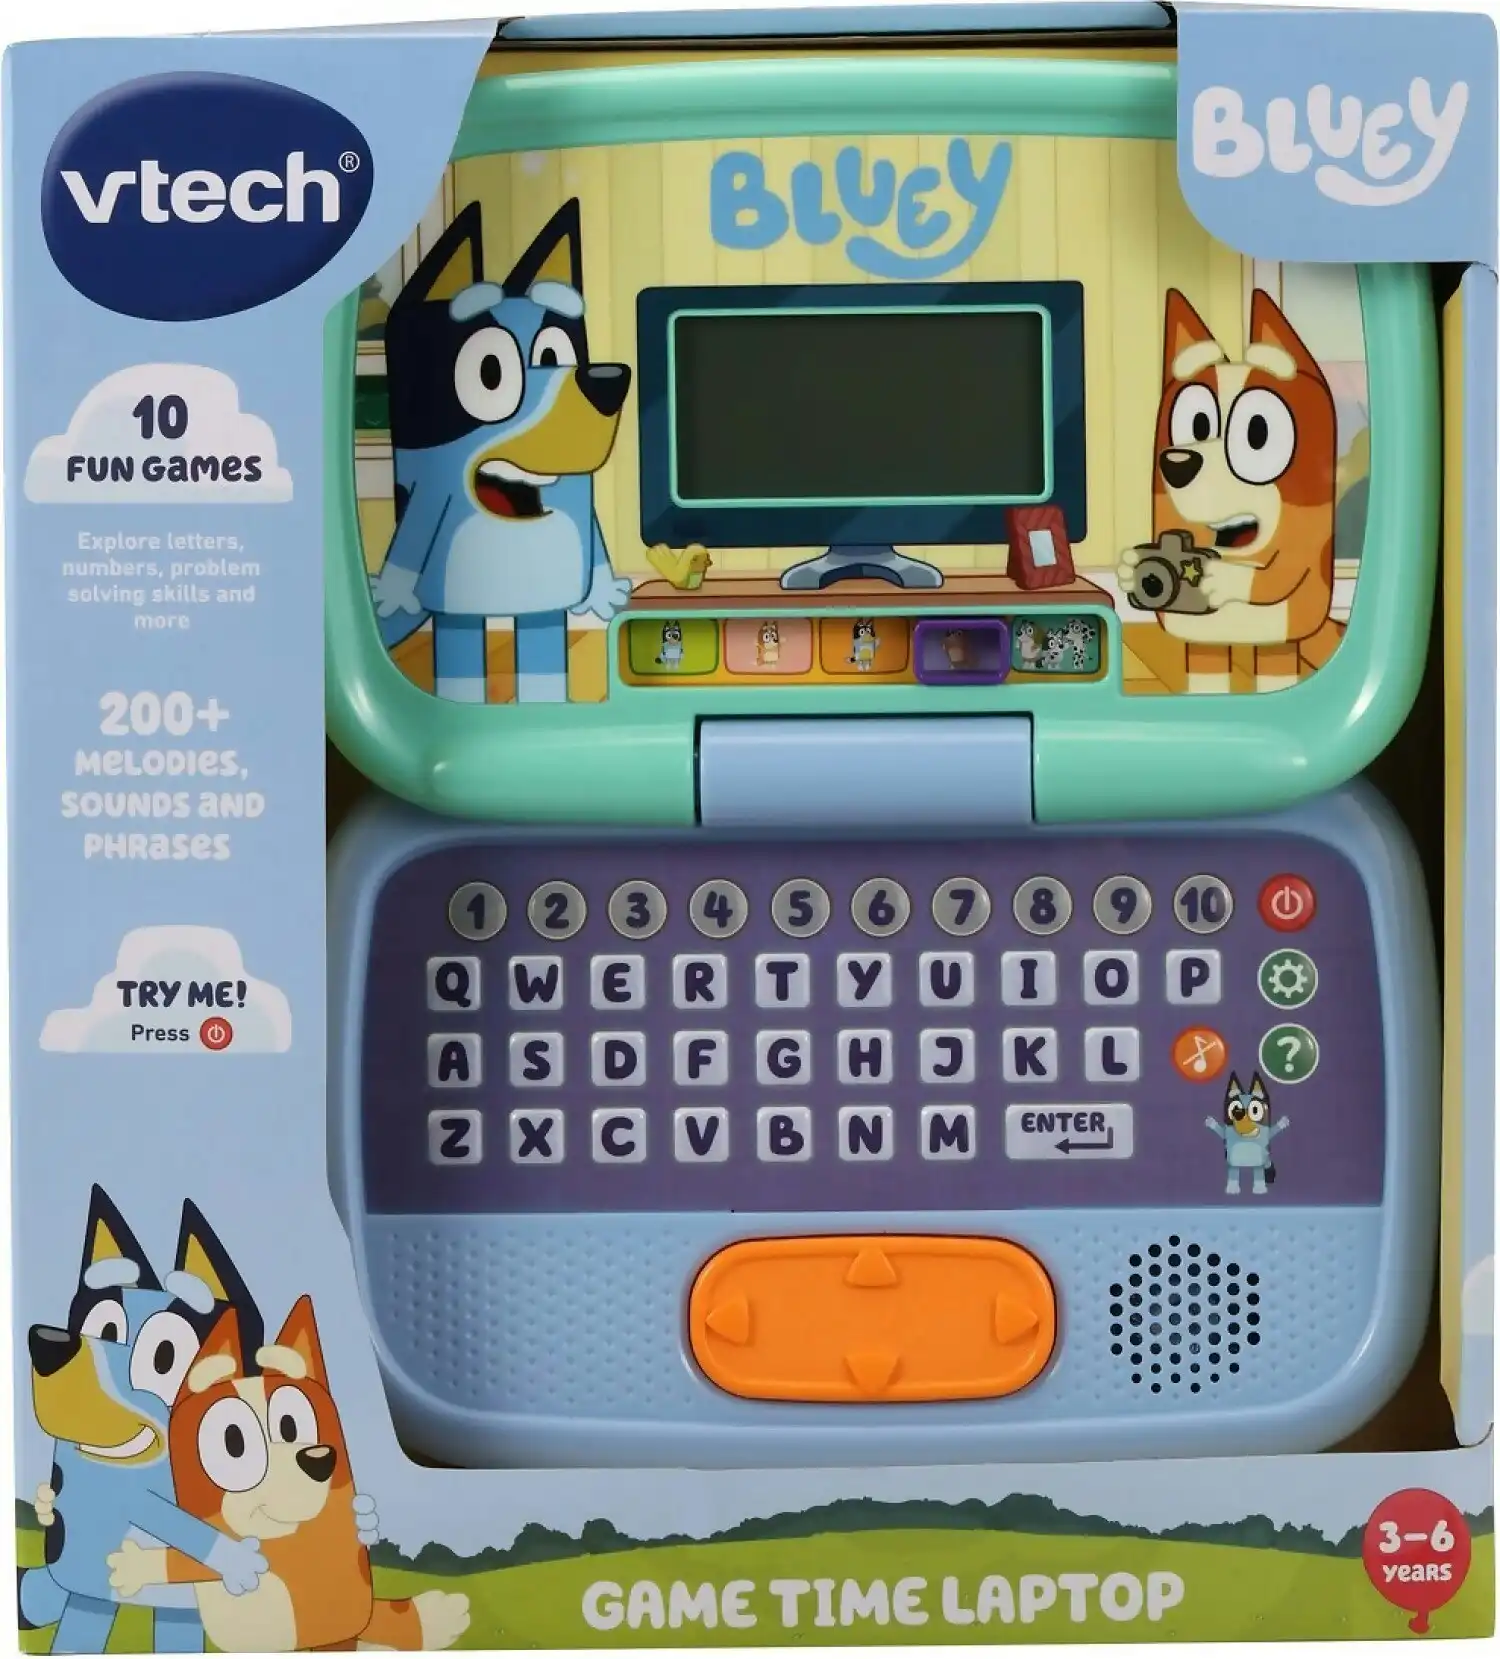 Vtech - Bluey - Game Time Laptop